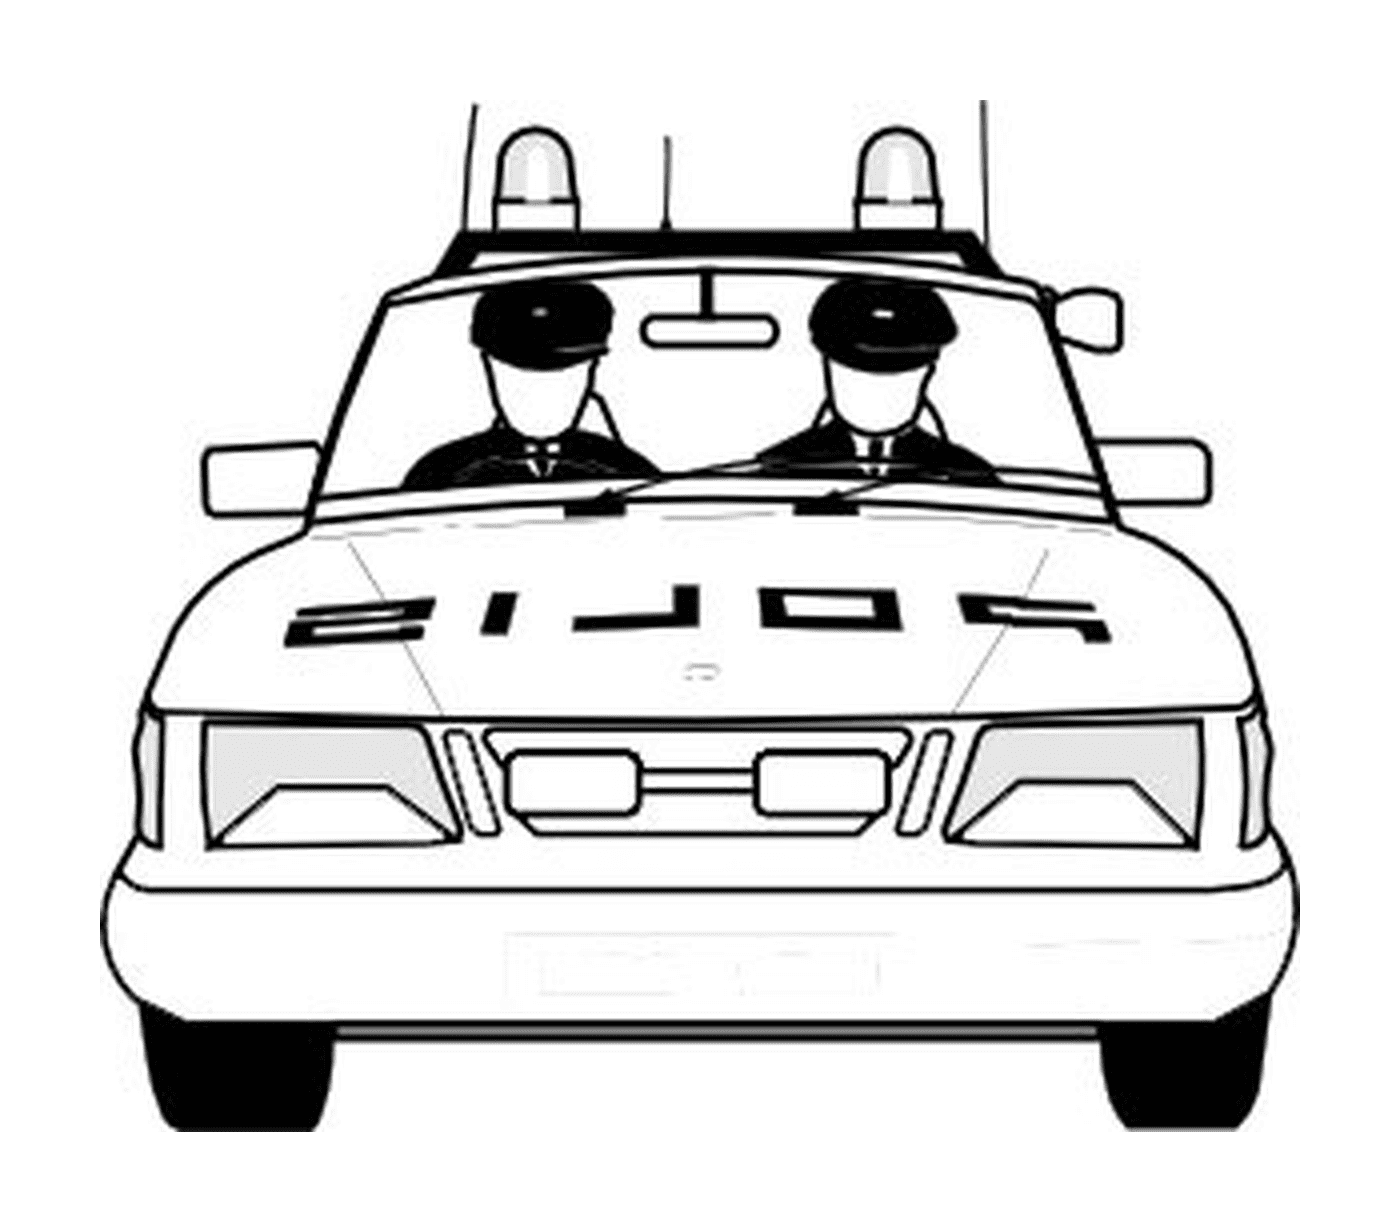  Carro da polícia, dois oficiais na parte de trás 